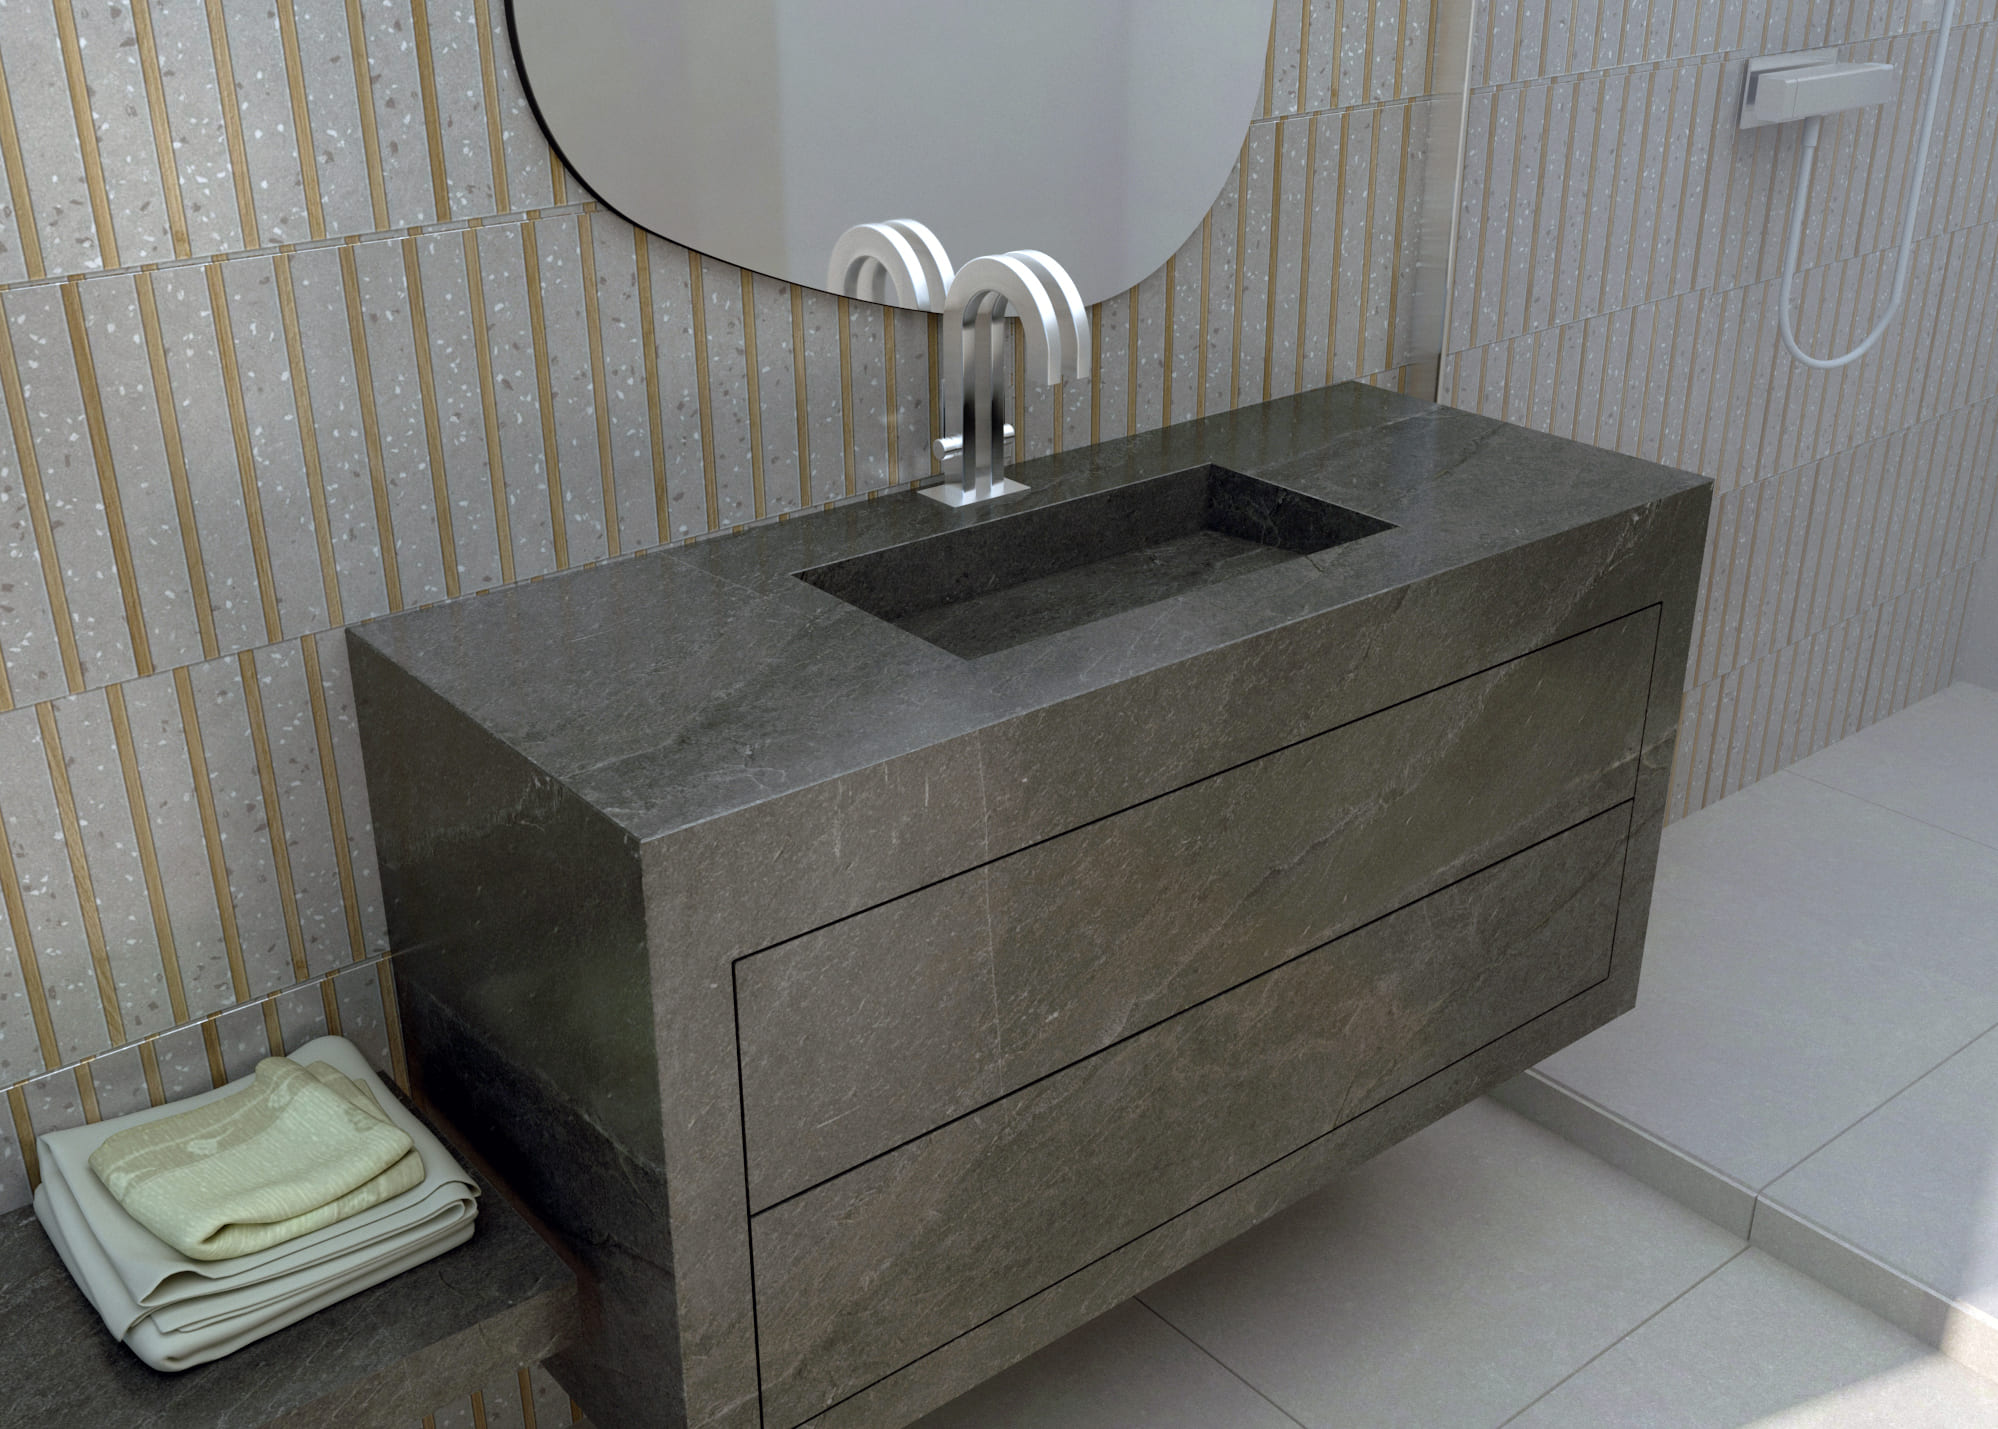 Mueble de baño suspendido con lavabo integrado. Mueble de baño porcelánico con lavabo integrado. Mueble de baño y lavabo en una sola pieza. Mueble de baño de diseño.